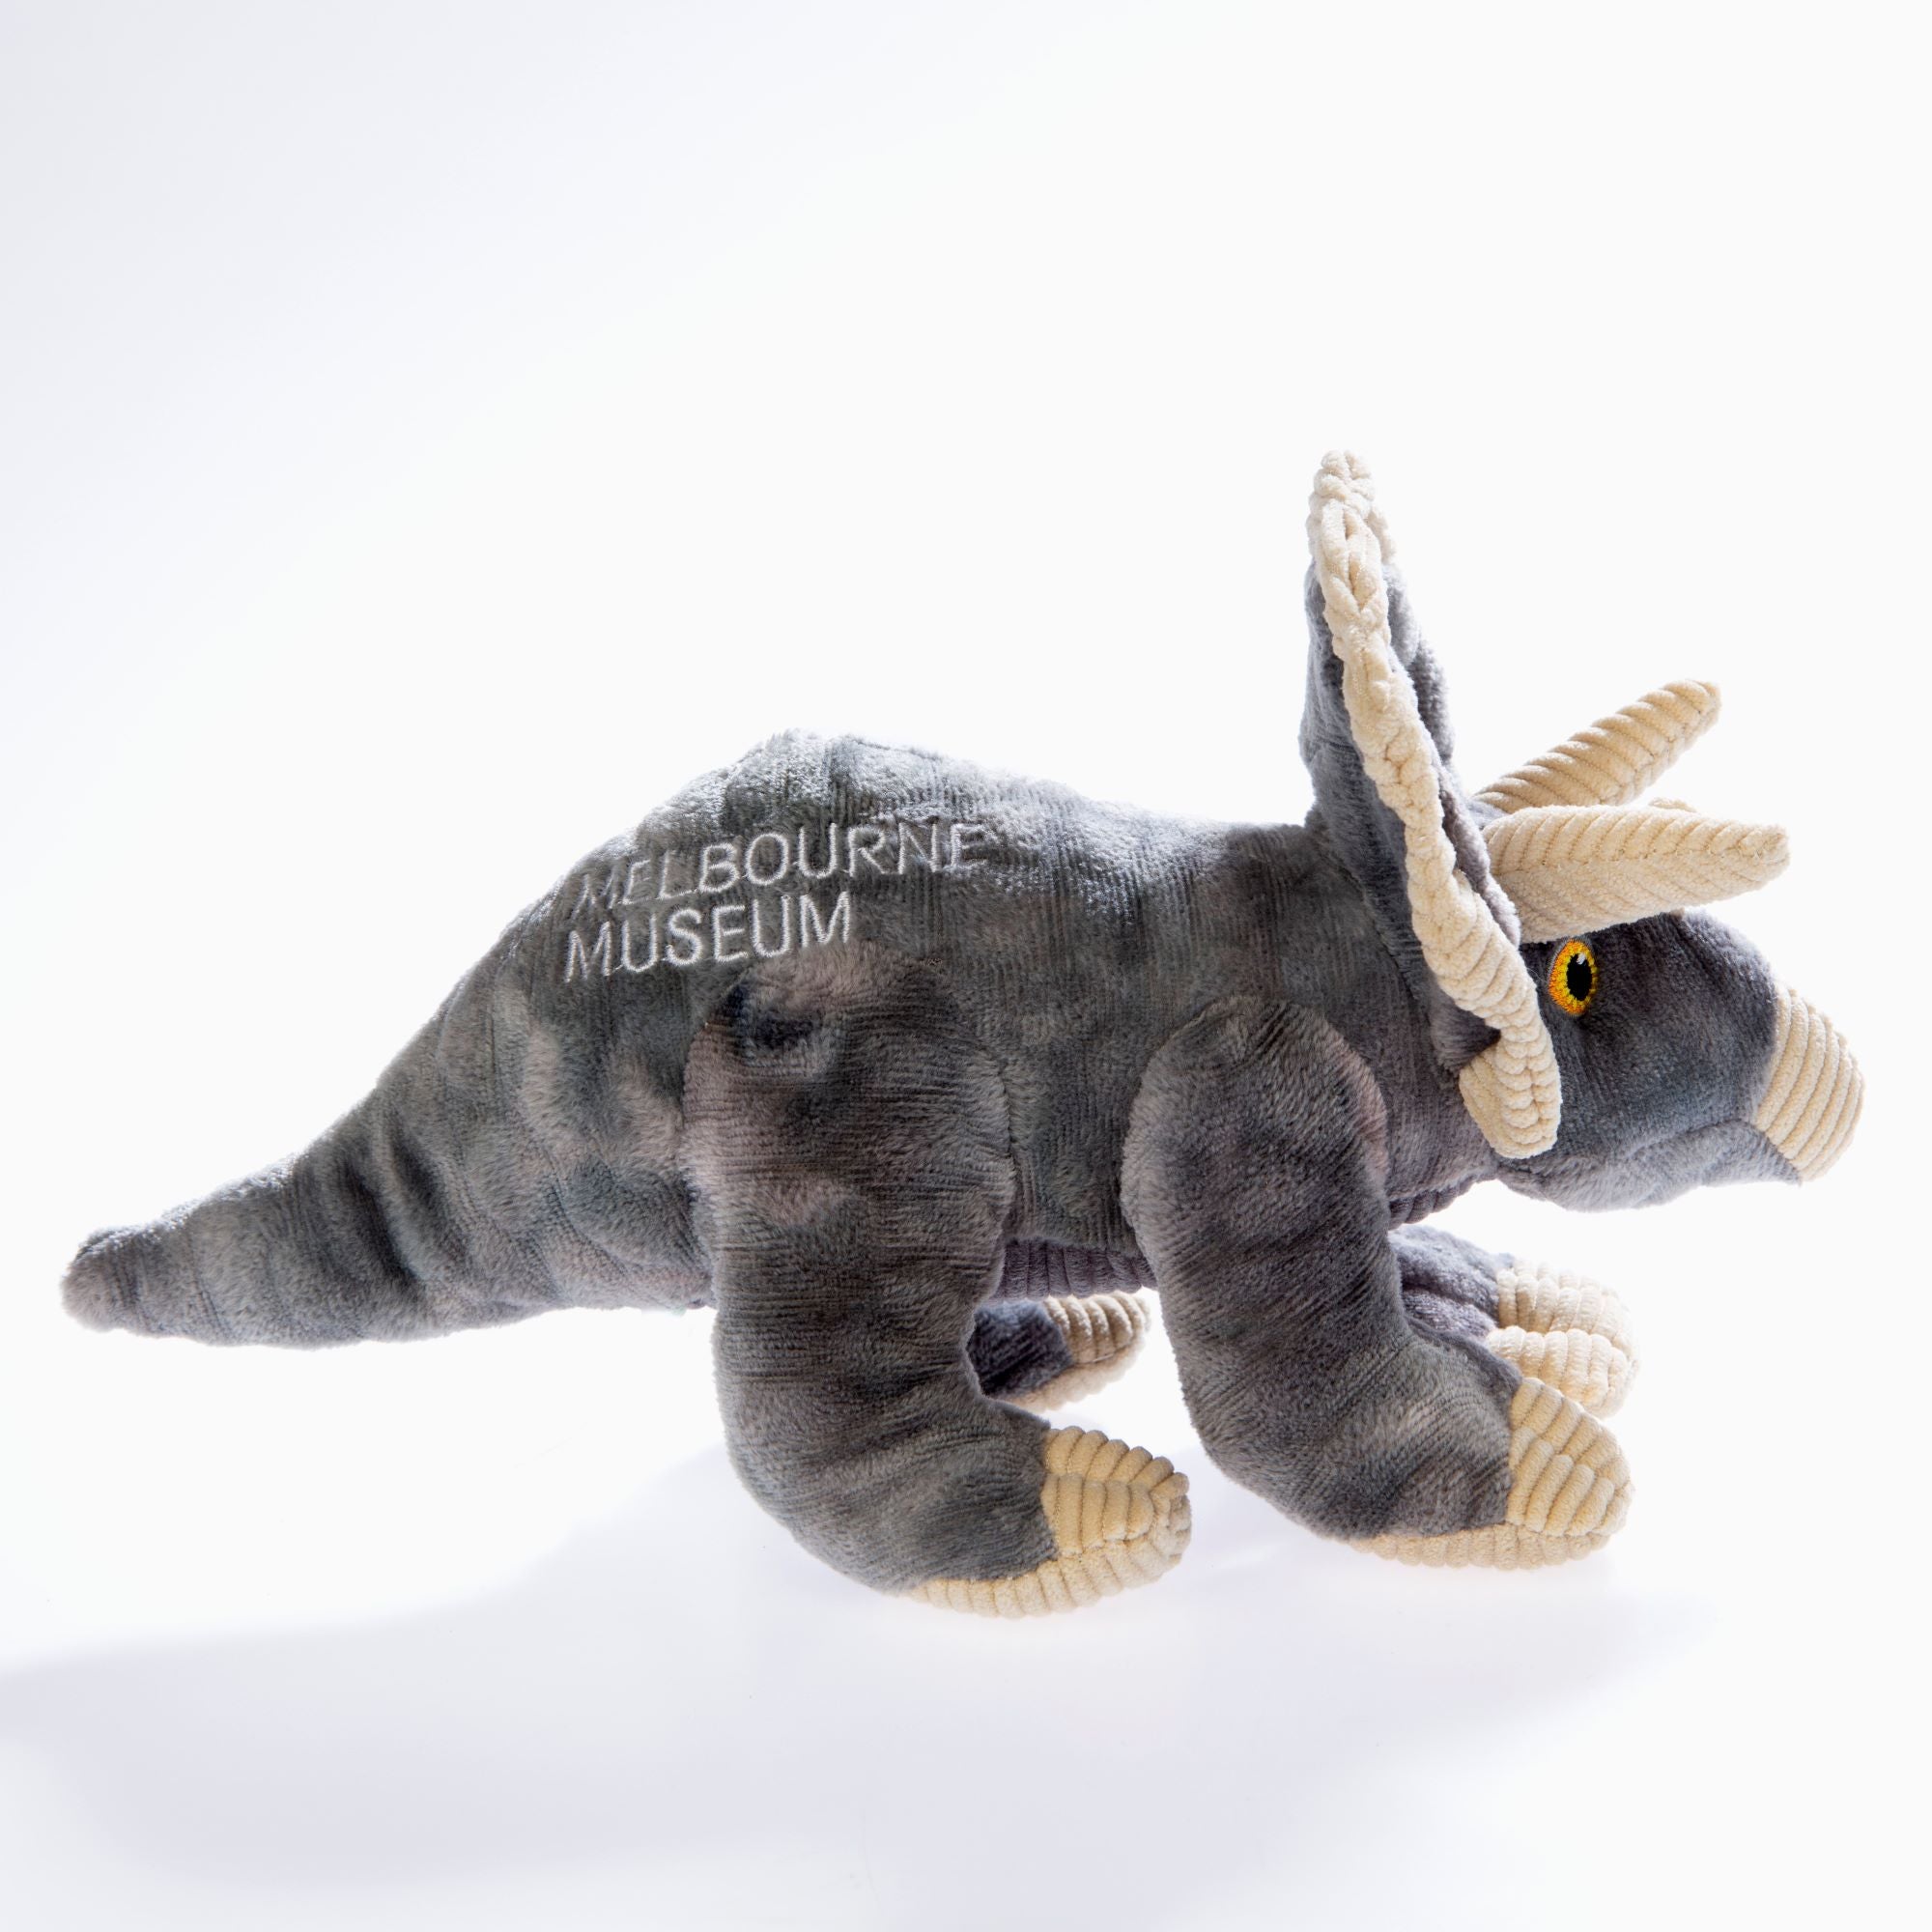 Melbourne Museum Triceratops Plush